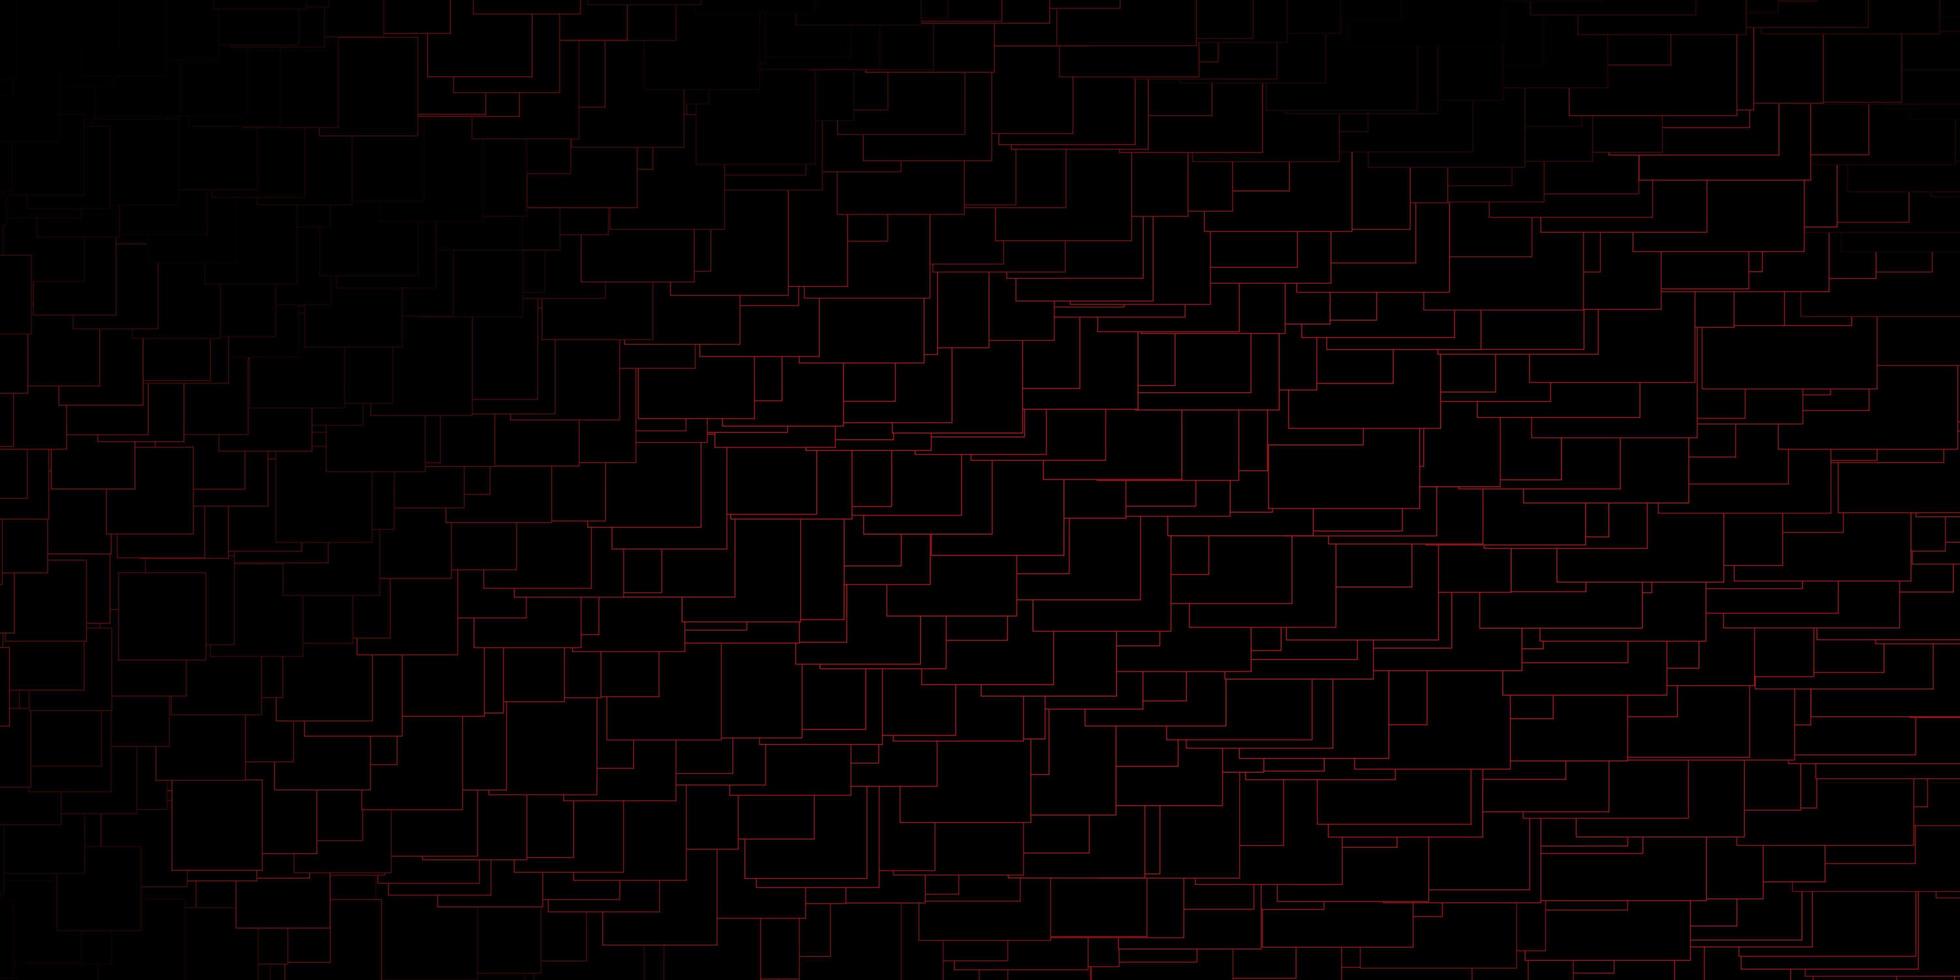 mörk röd vektor bakgrund med rektanglar. illustration med en uppsättning lutningsrektanglar. mönster för affärshäften, broschyrer